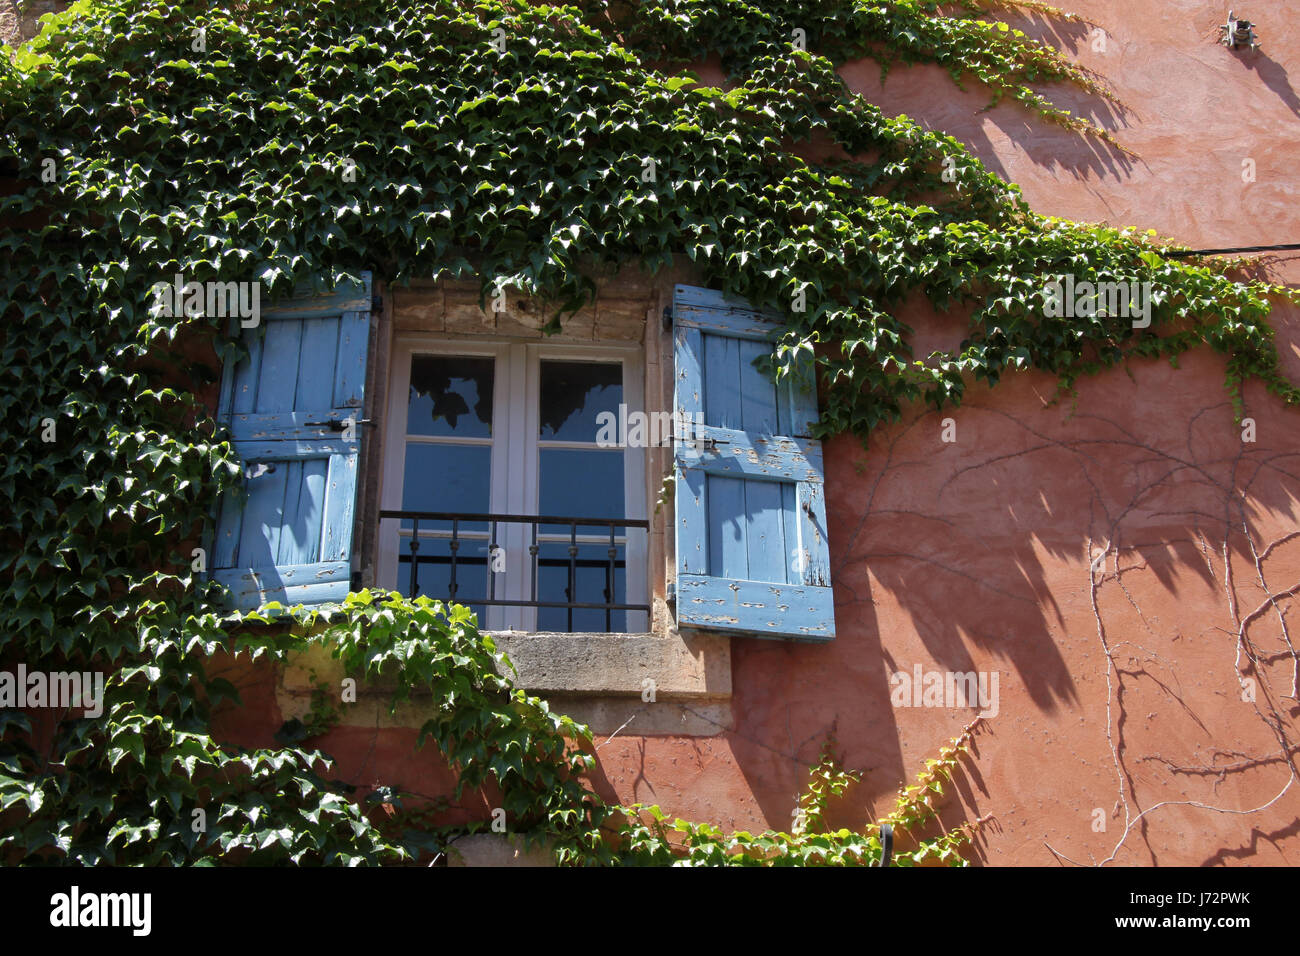 farbige Häuser bunte wunderschöne vielfältige farbenprächtige Frankreich villa Stockfoto